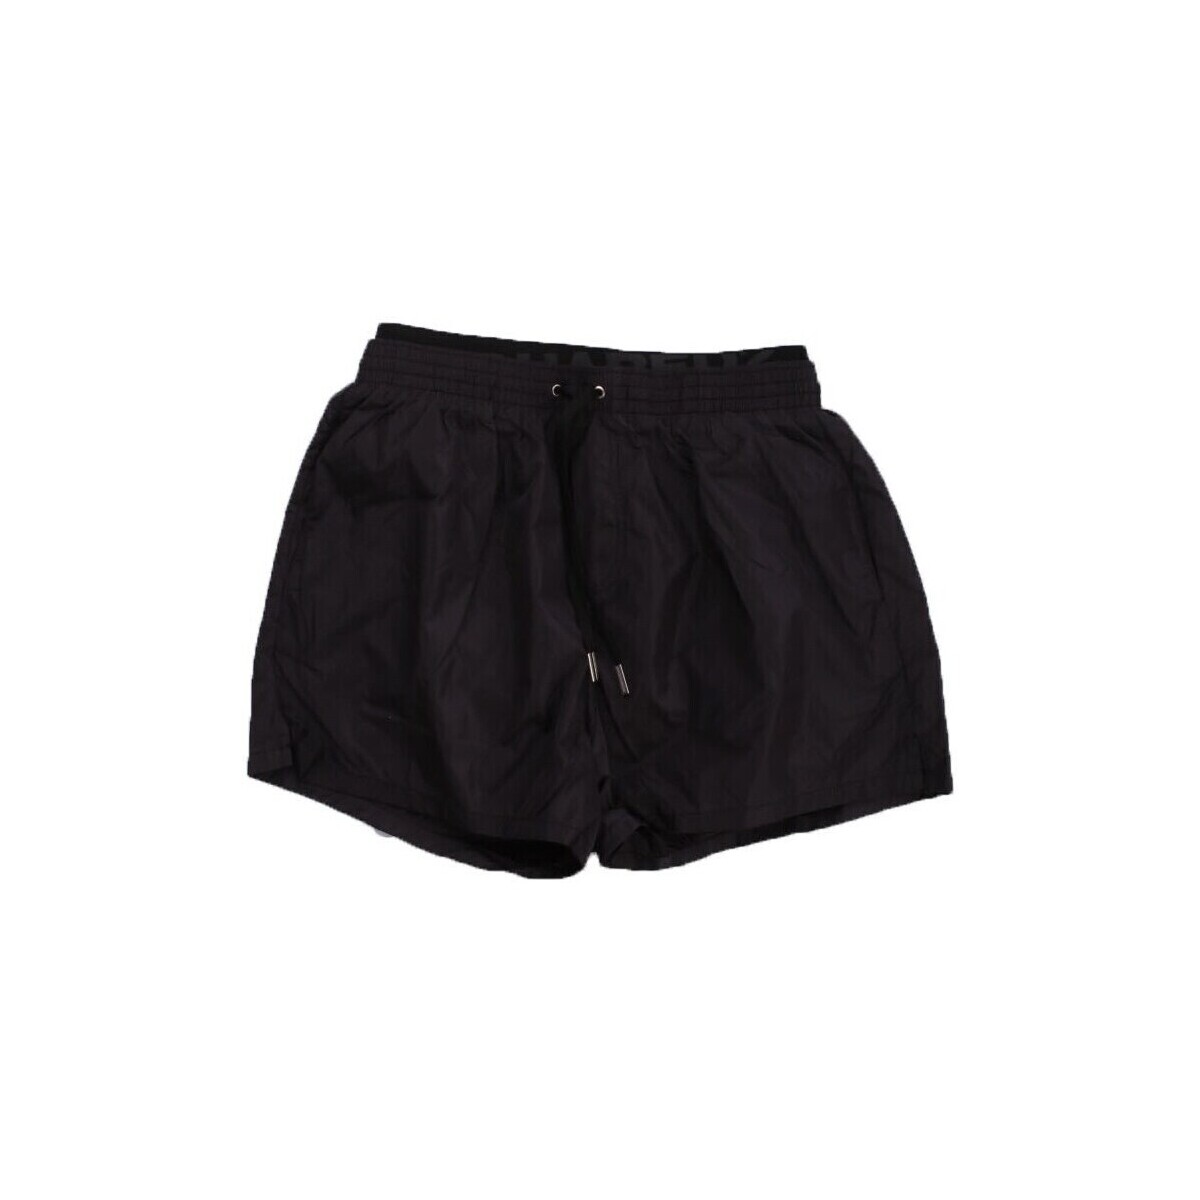 Kleidung Herren Shorts / Bermudas Dsquared D7B64462 Schwarz